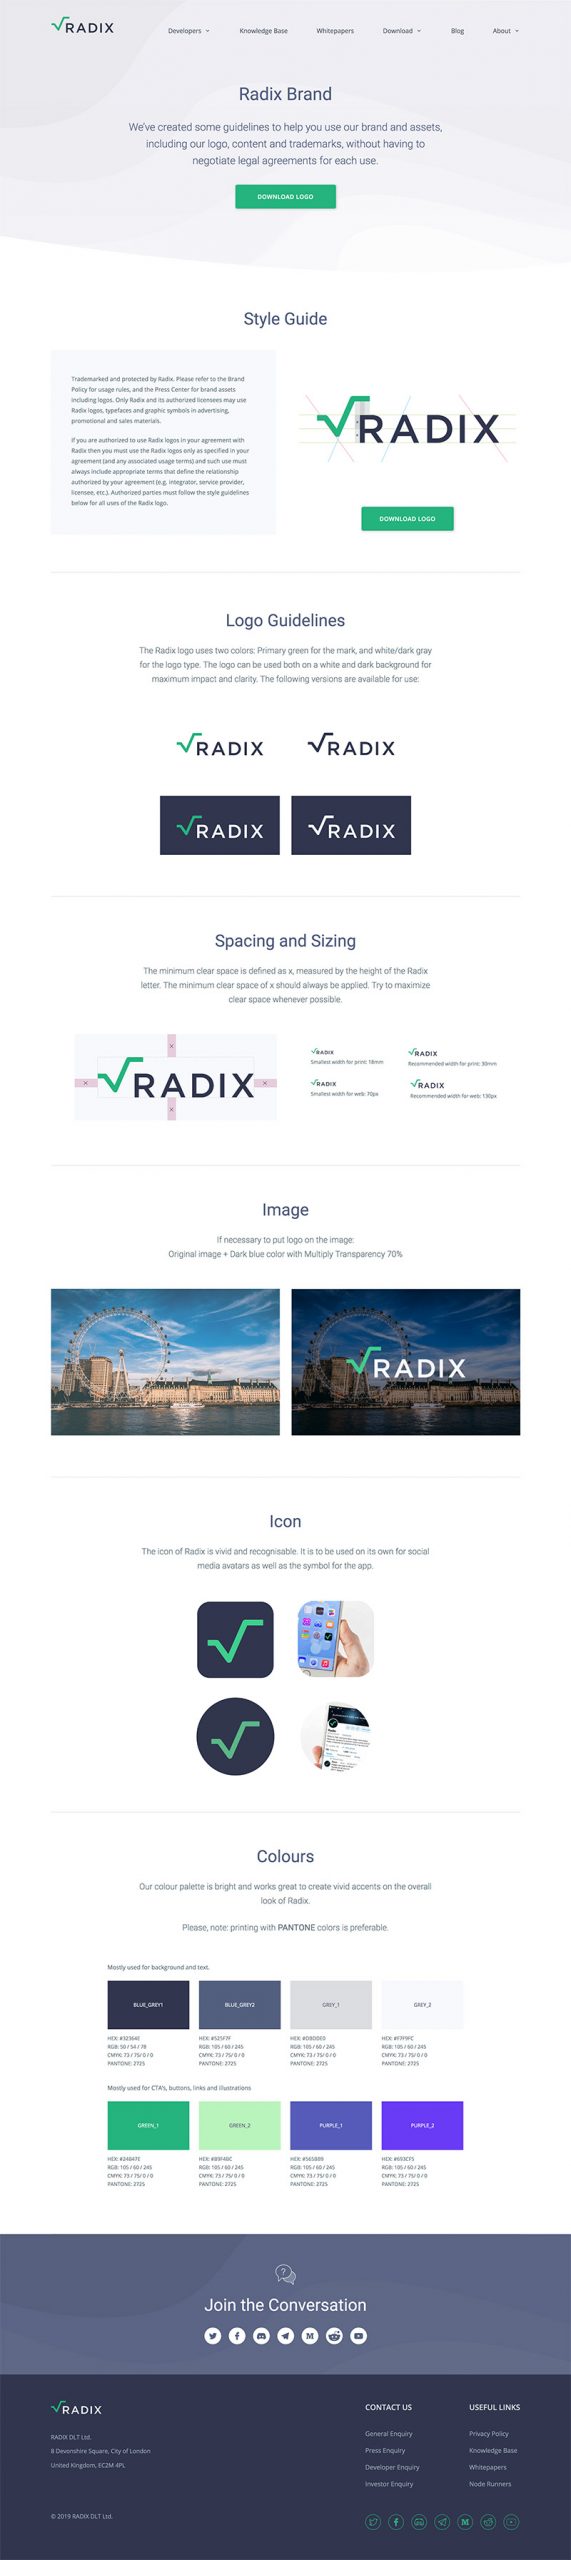 radix-brandbook